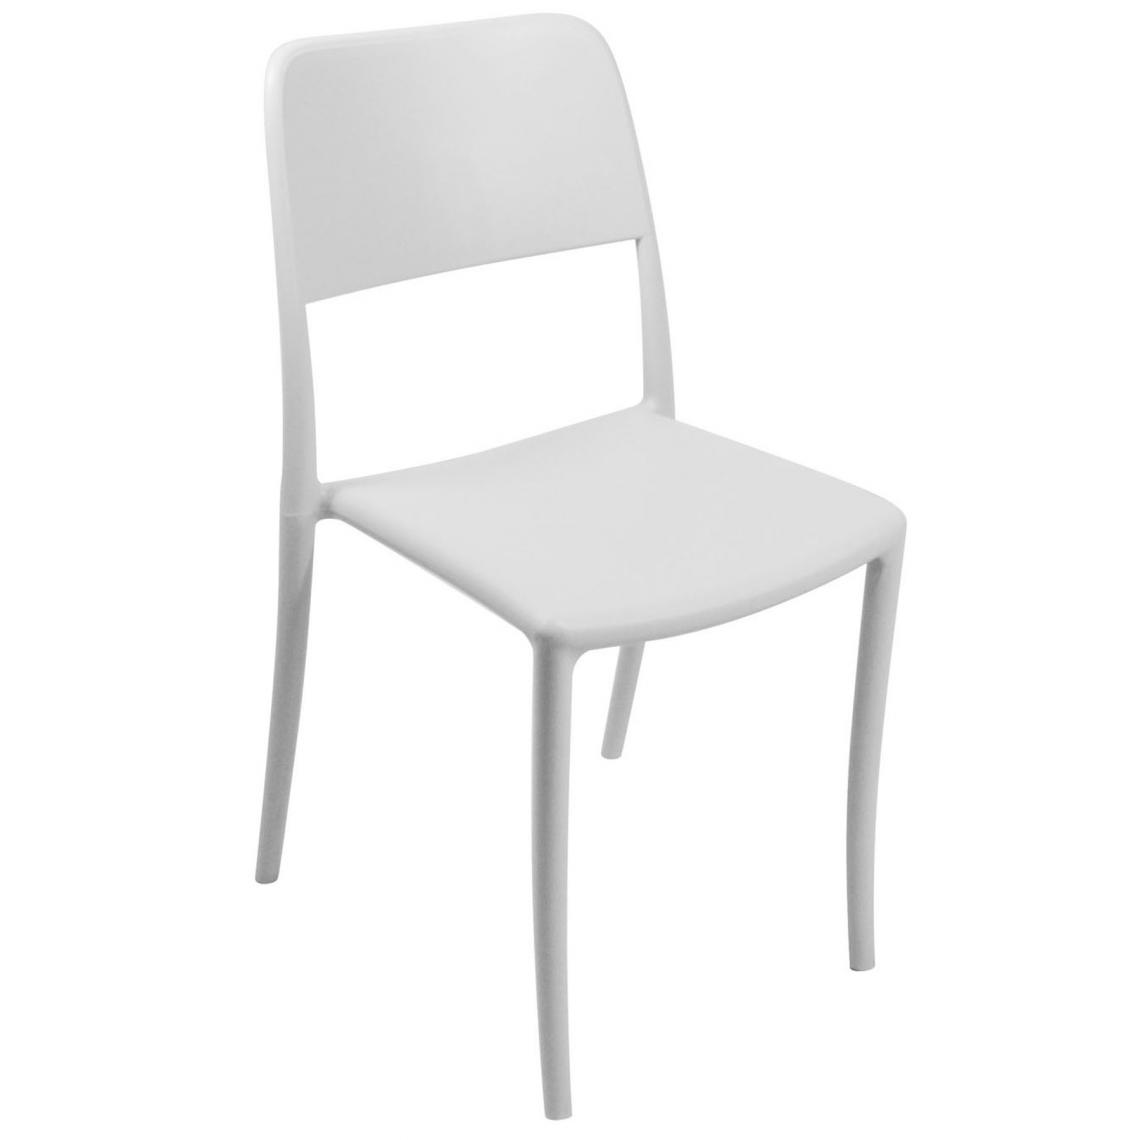 Pegane - Lot de 4 Chaises haute en polypropylène coloris blanc - Dim : 44 x 53 x 63 cm -PEGANE- - Chaises de jardin